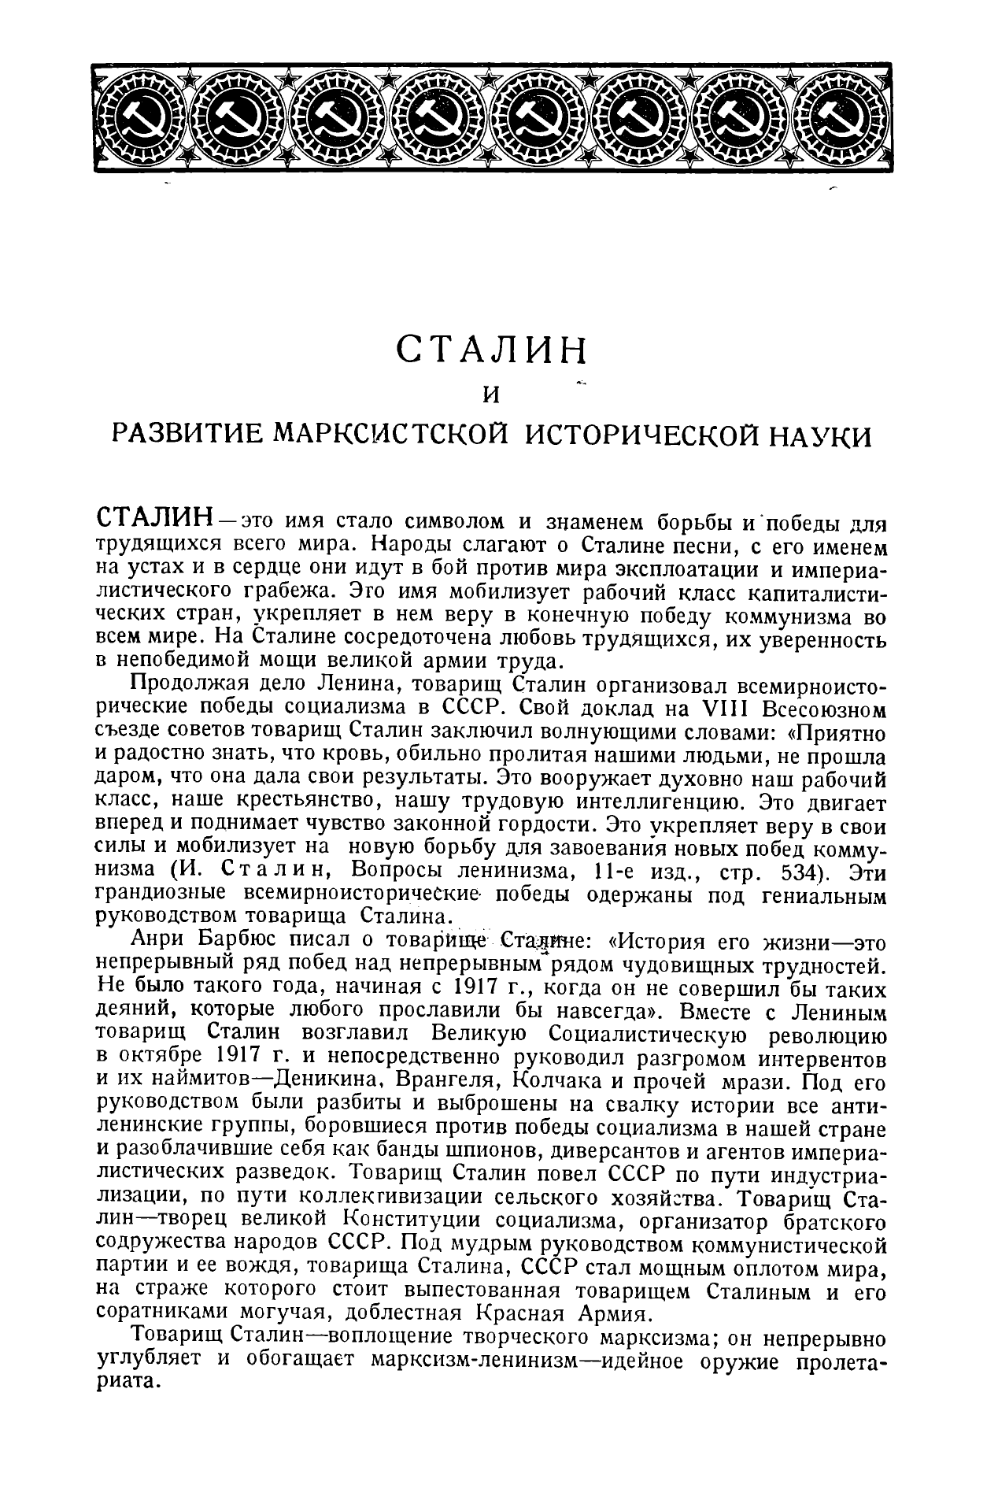 Сталин и развитие марксистской исторической науки в СССР